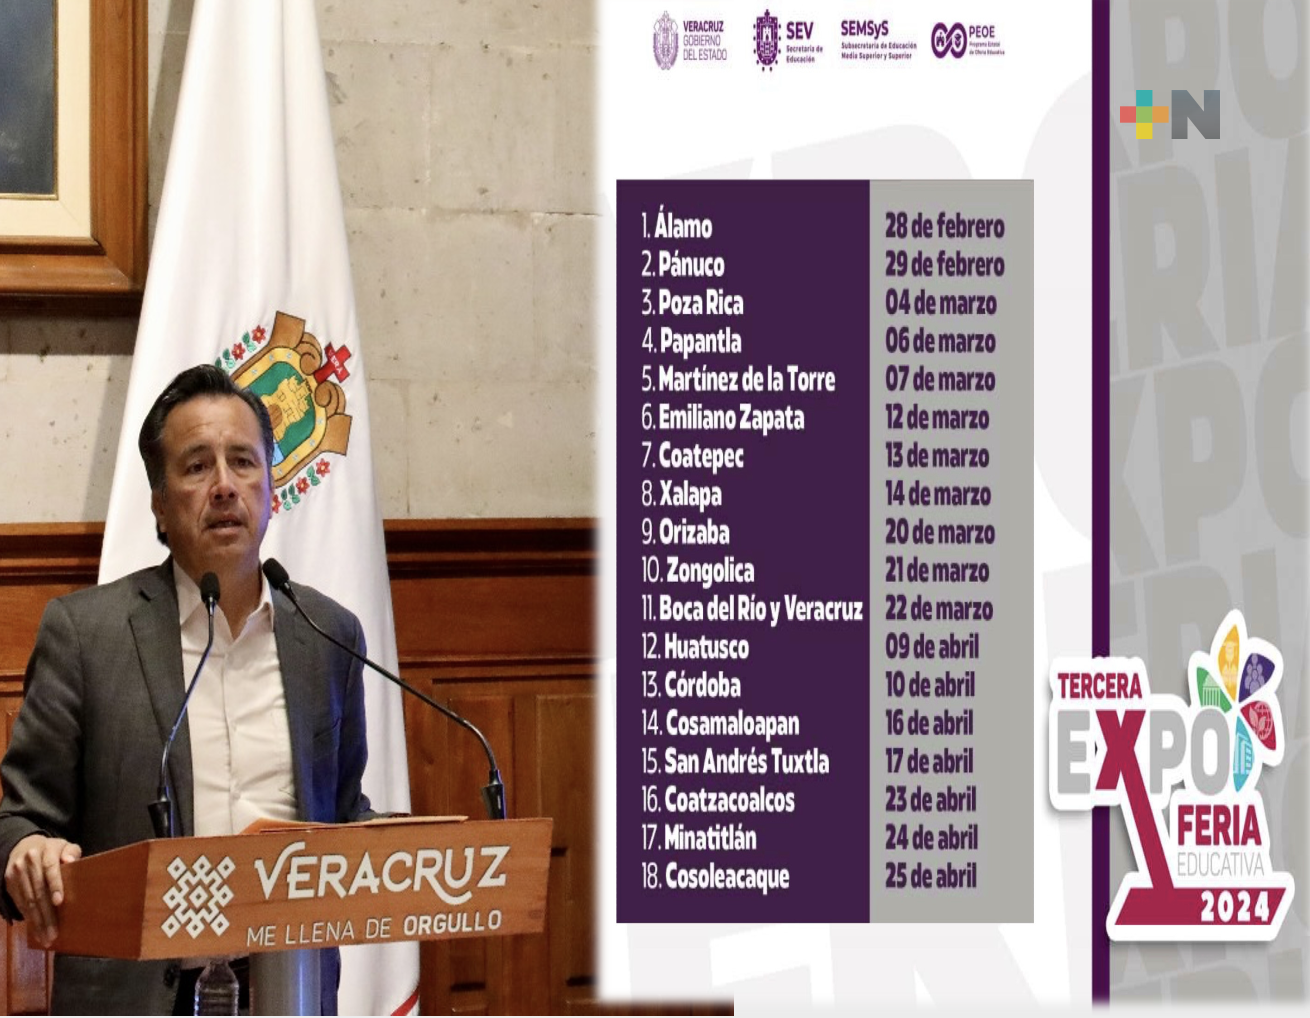 Tercera edición de Expo Feria Educativa llegará a 18 regiones con gran oferta académica